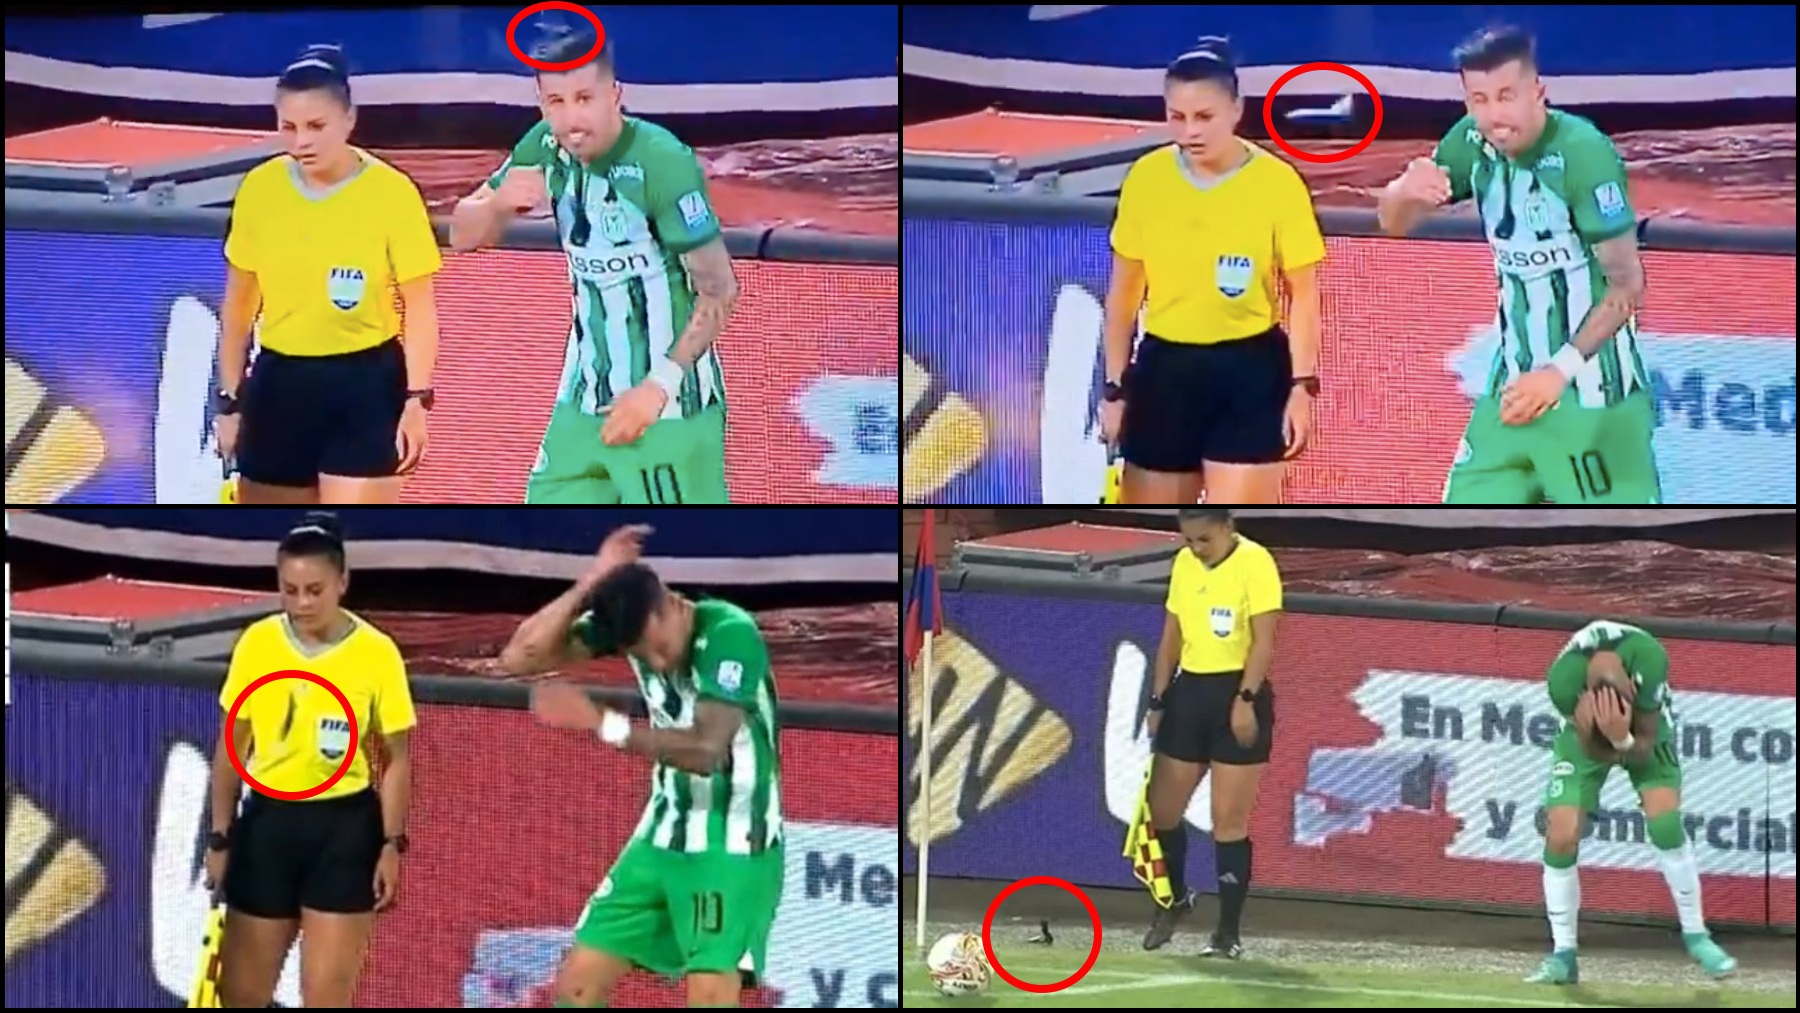 Secuencia del impacto de la navaja en la cabeza del jugador de Atlético Nacional. (Win Sports)